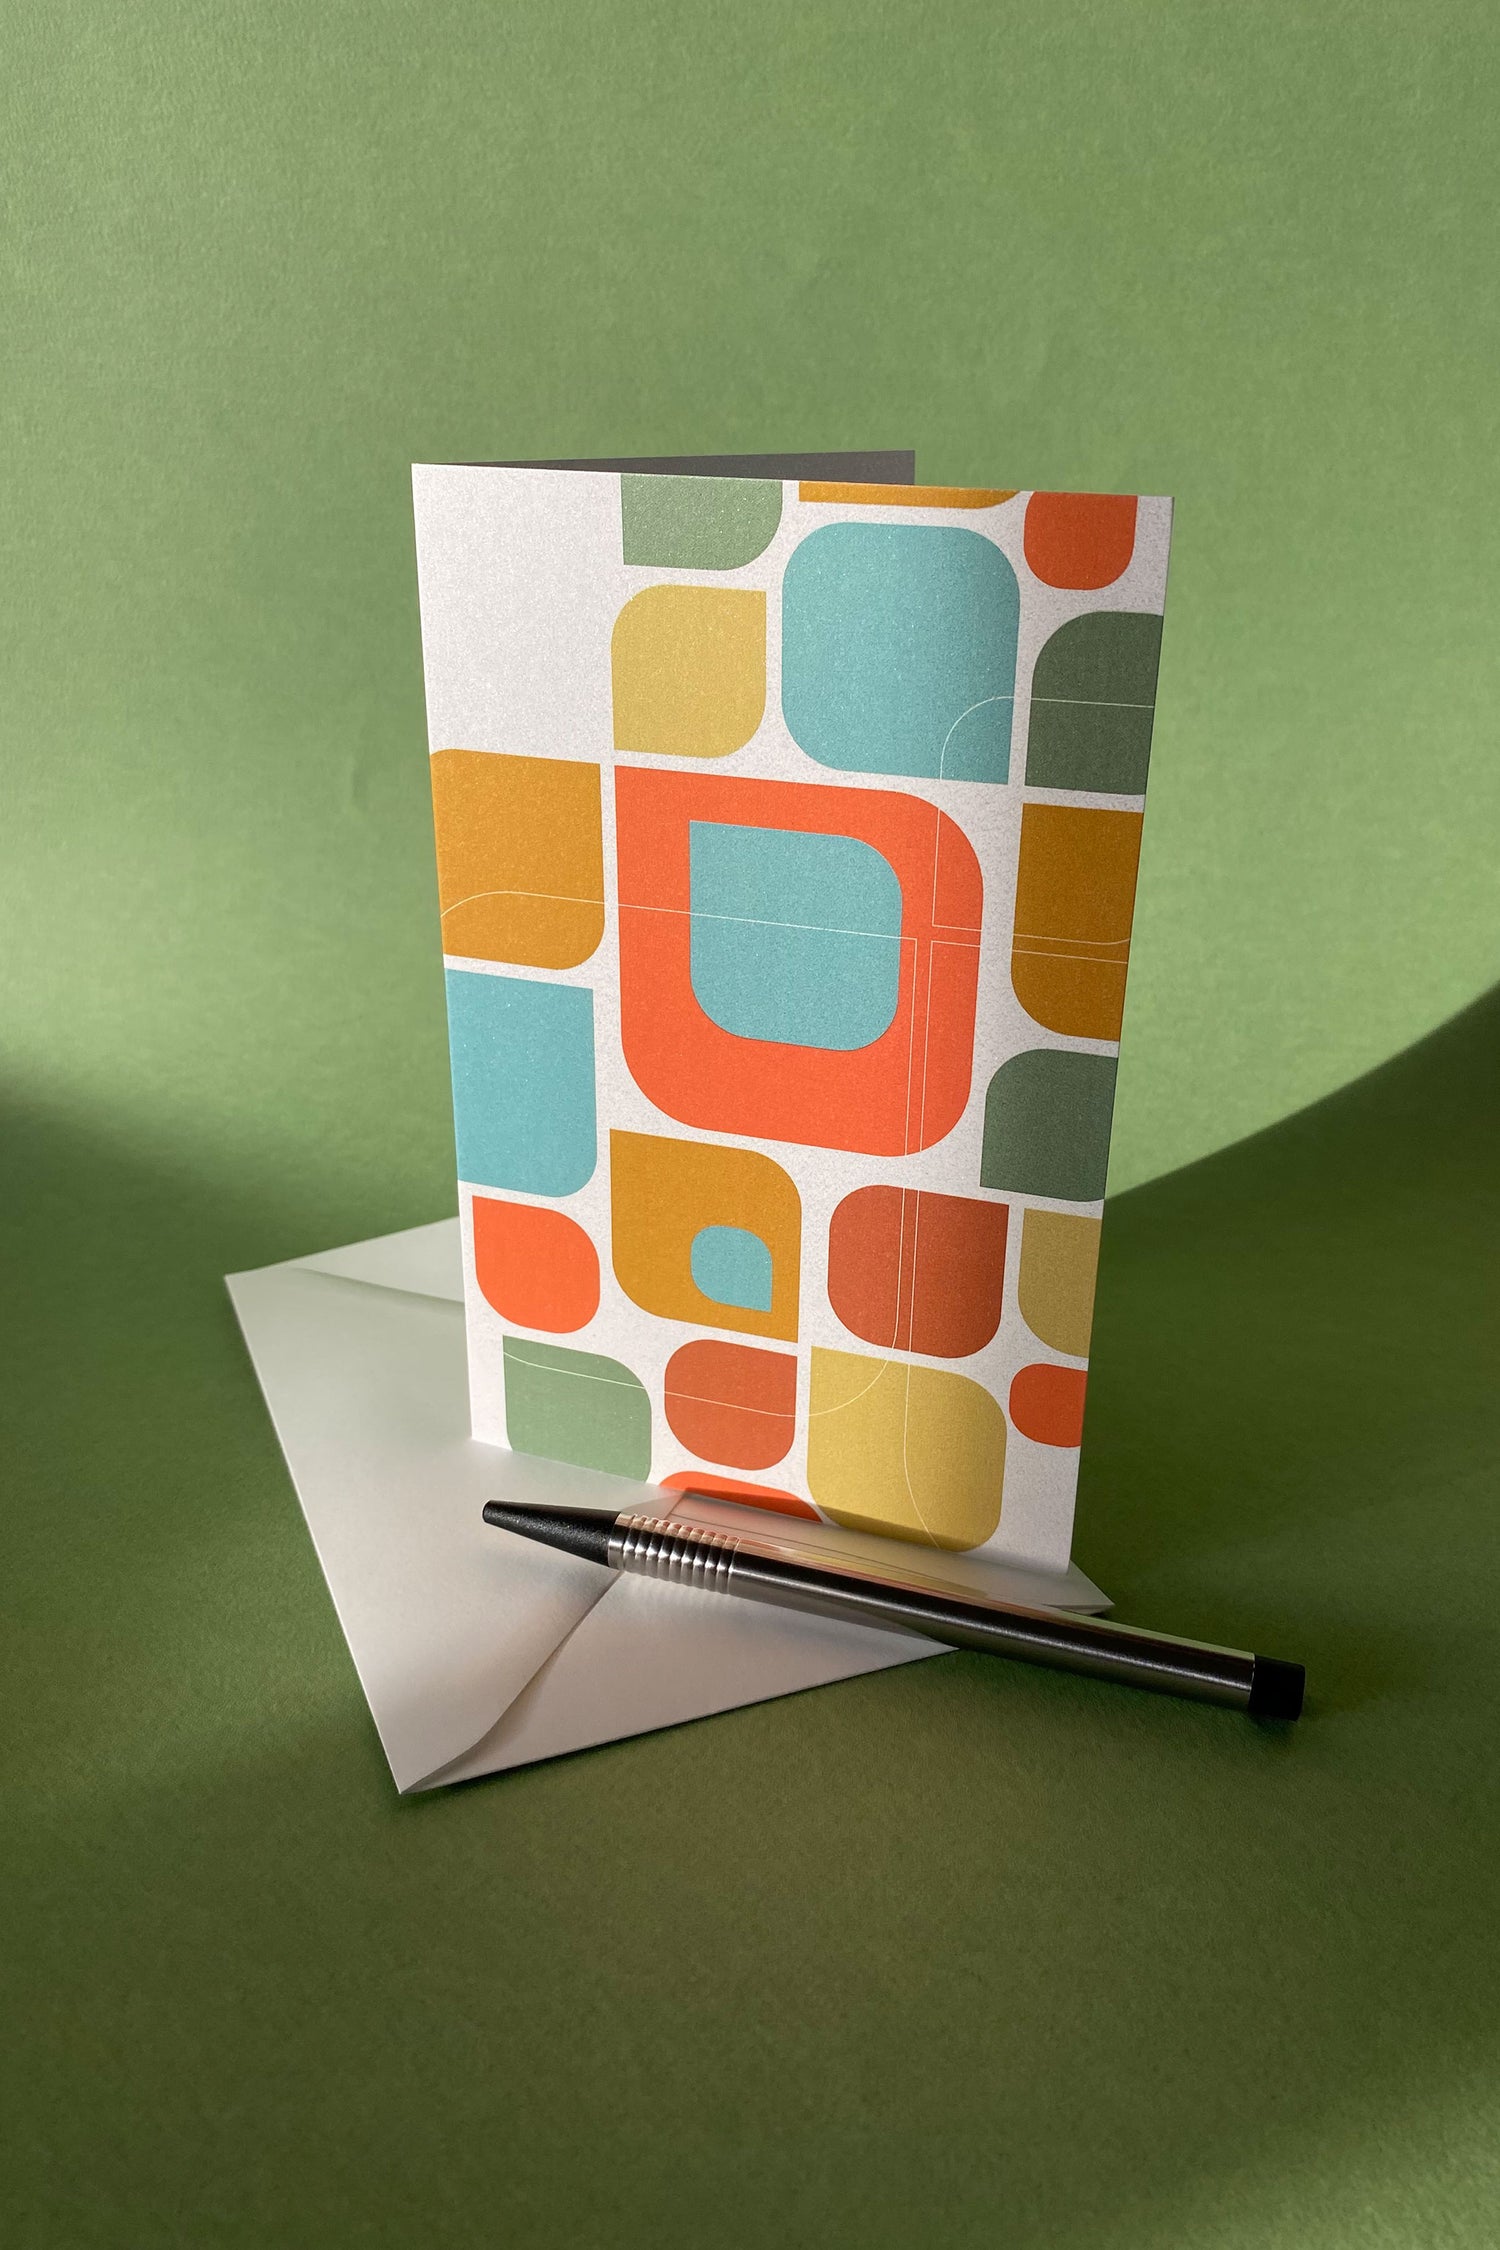 Sfeerfoto van product wenskaart "Kleurmotief op wit" met een envelop en een pen tegen een groene achtergrond